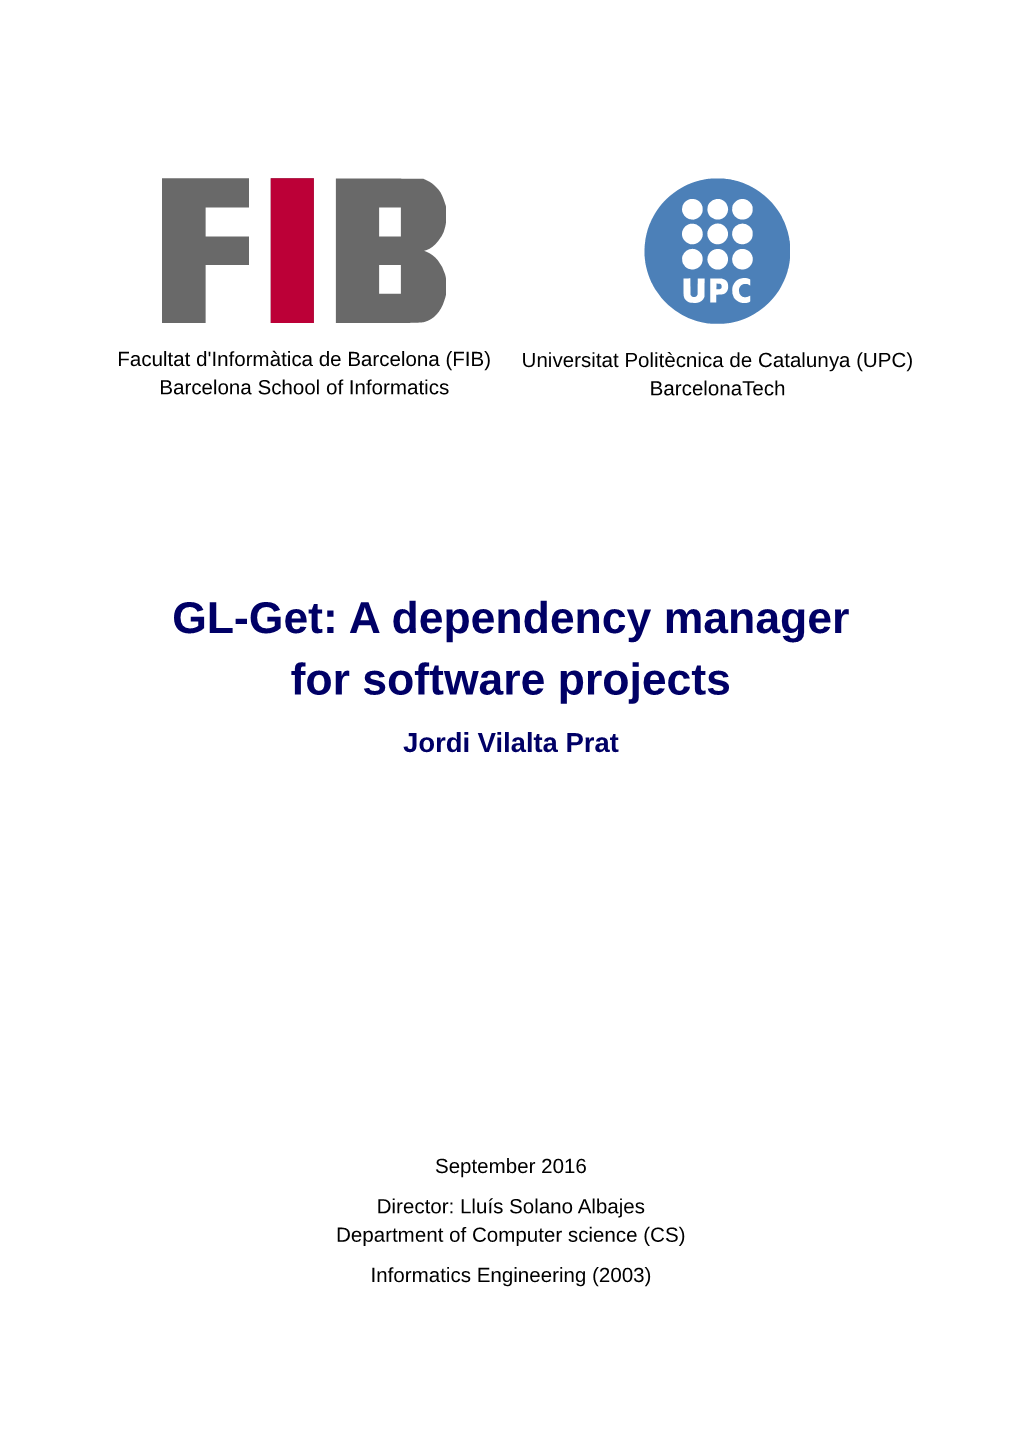 GL-Get: a Dependency Manager for Software Projects Jordi Vilalta Prat